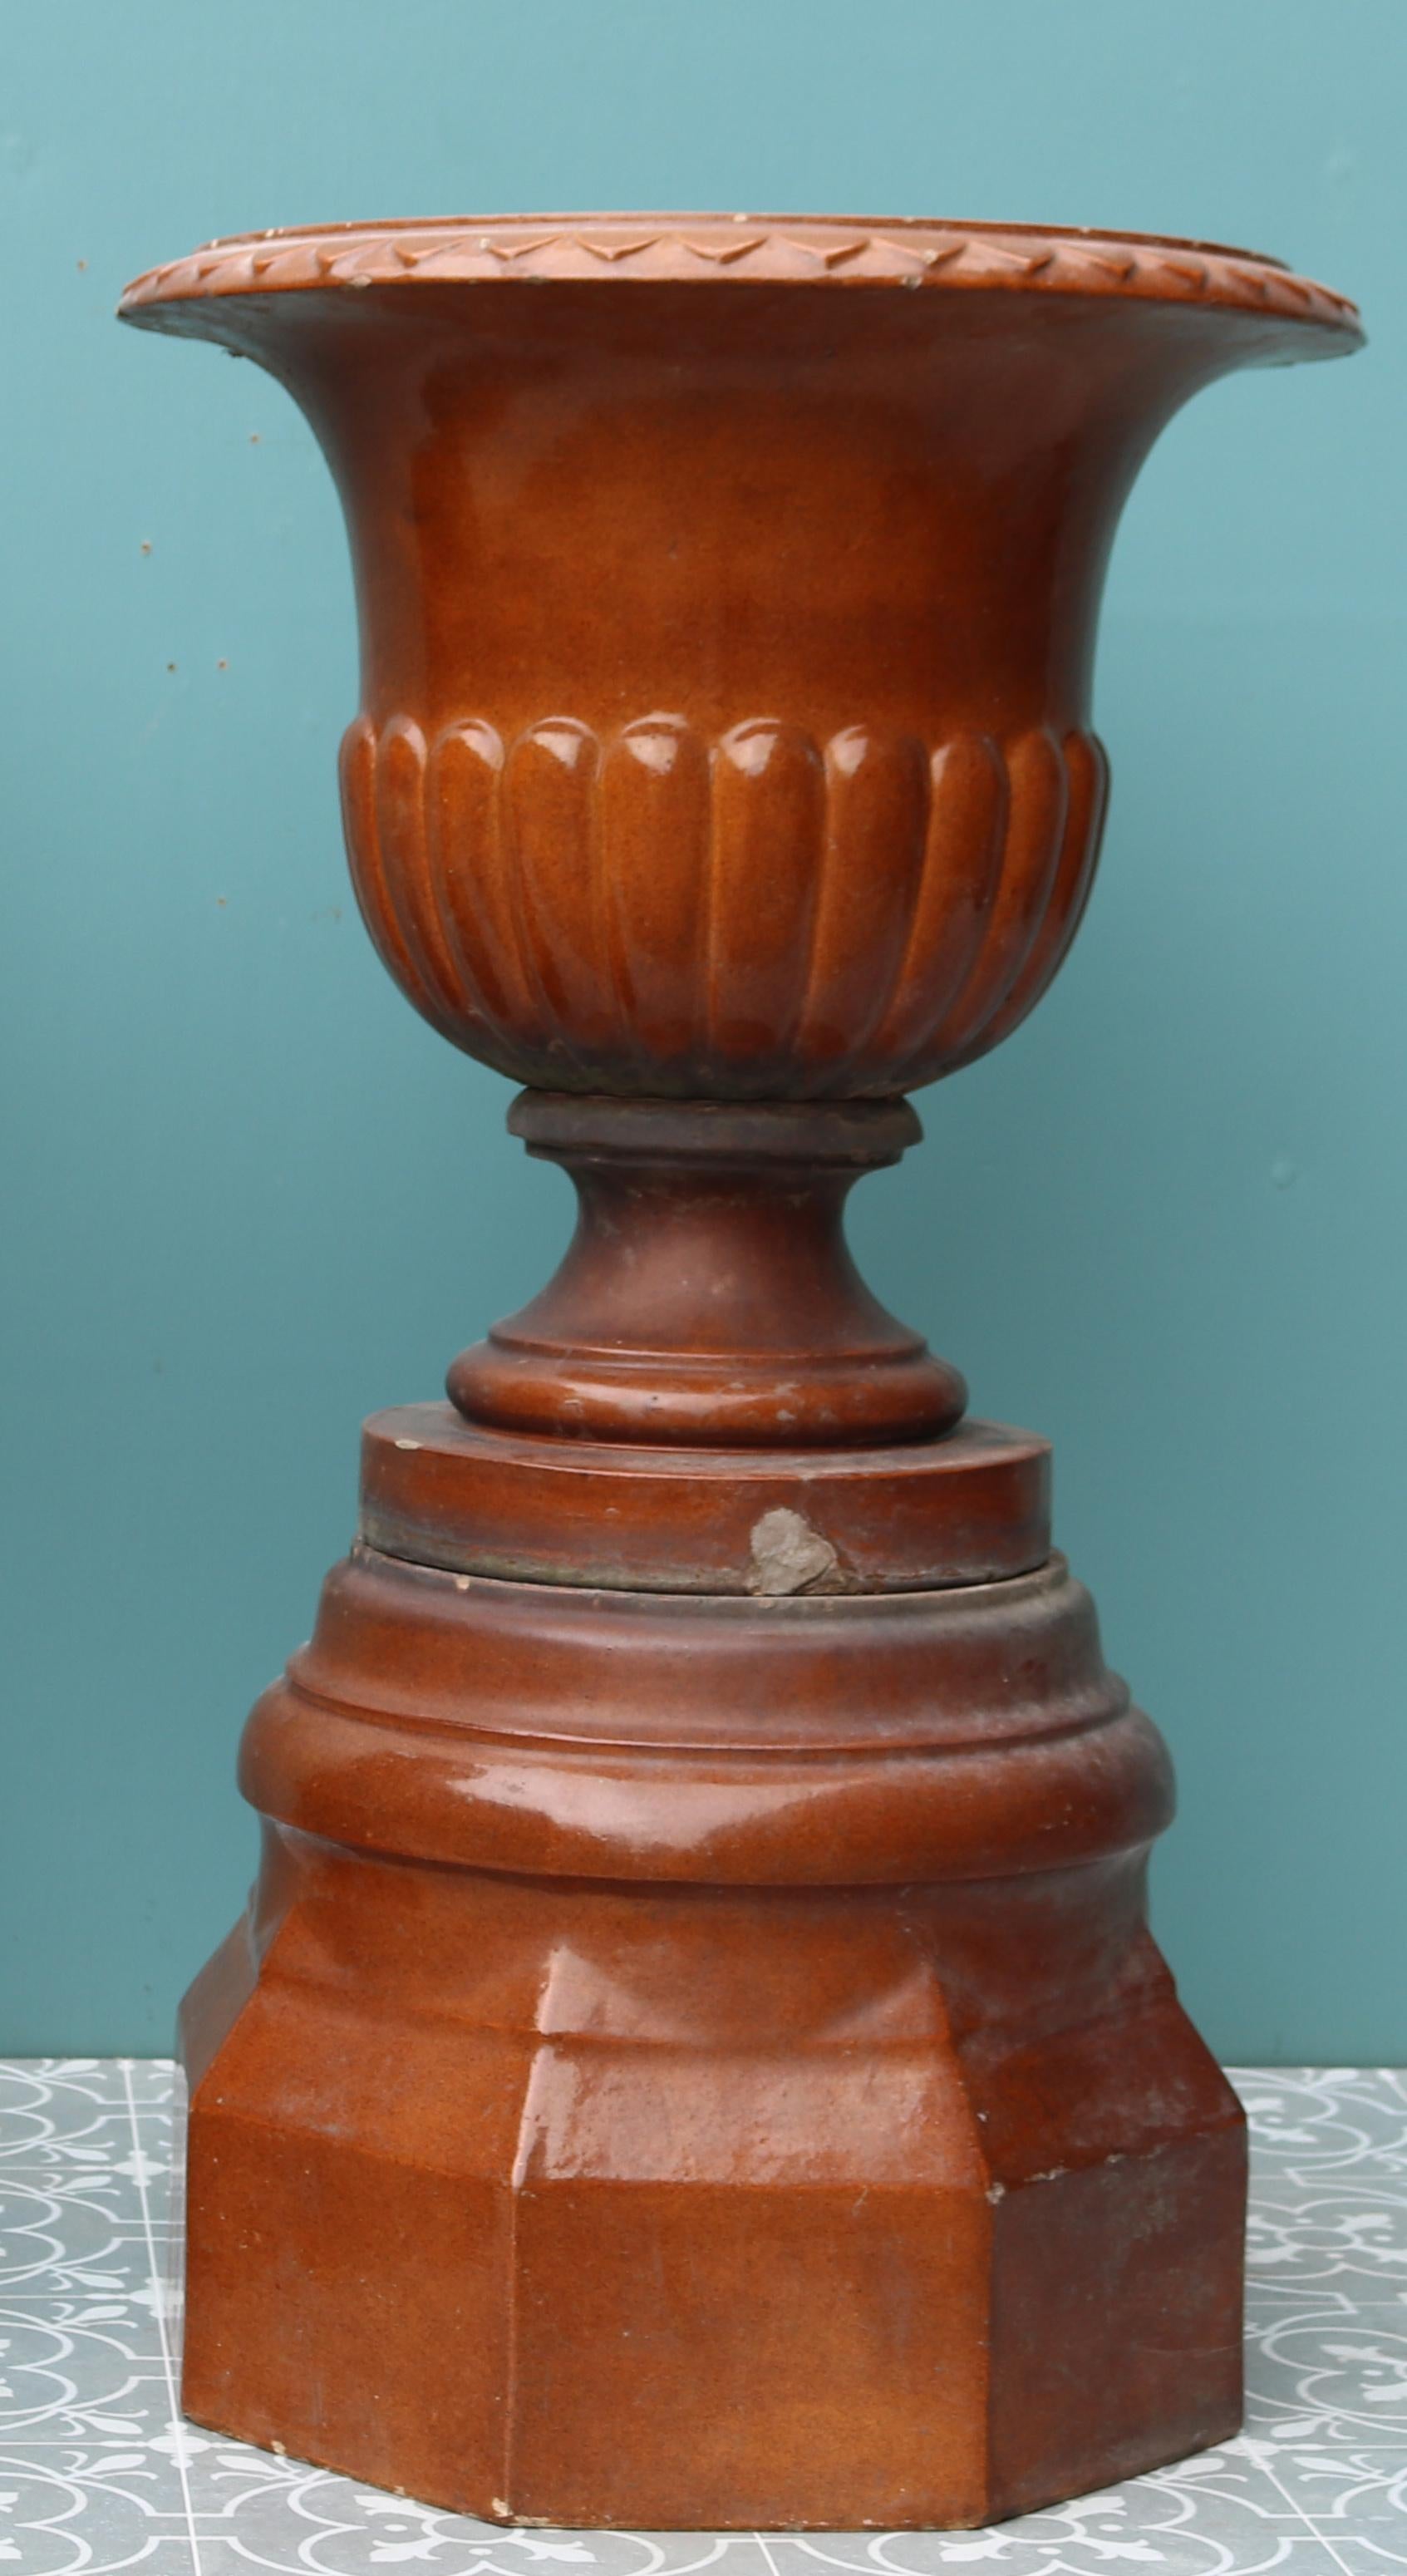 Zwei schottische Gartenurnen mit Sirupglasur auf Sockeln.

Zusätzliche Abmessungen (pro Stück):

Durchmesser der Urne 48 cm

Sockel 40 x 40 cm

Gewicht 45 kg